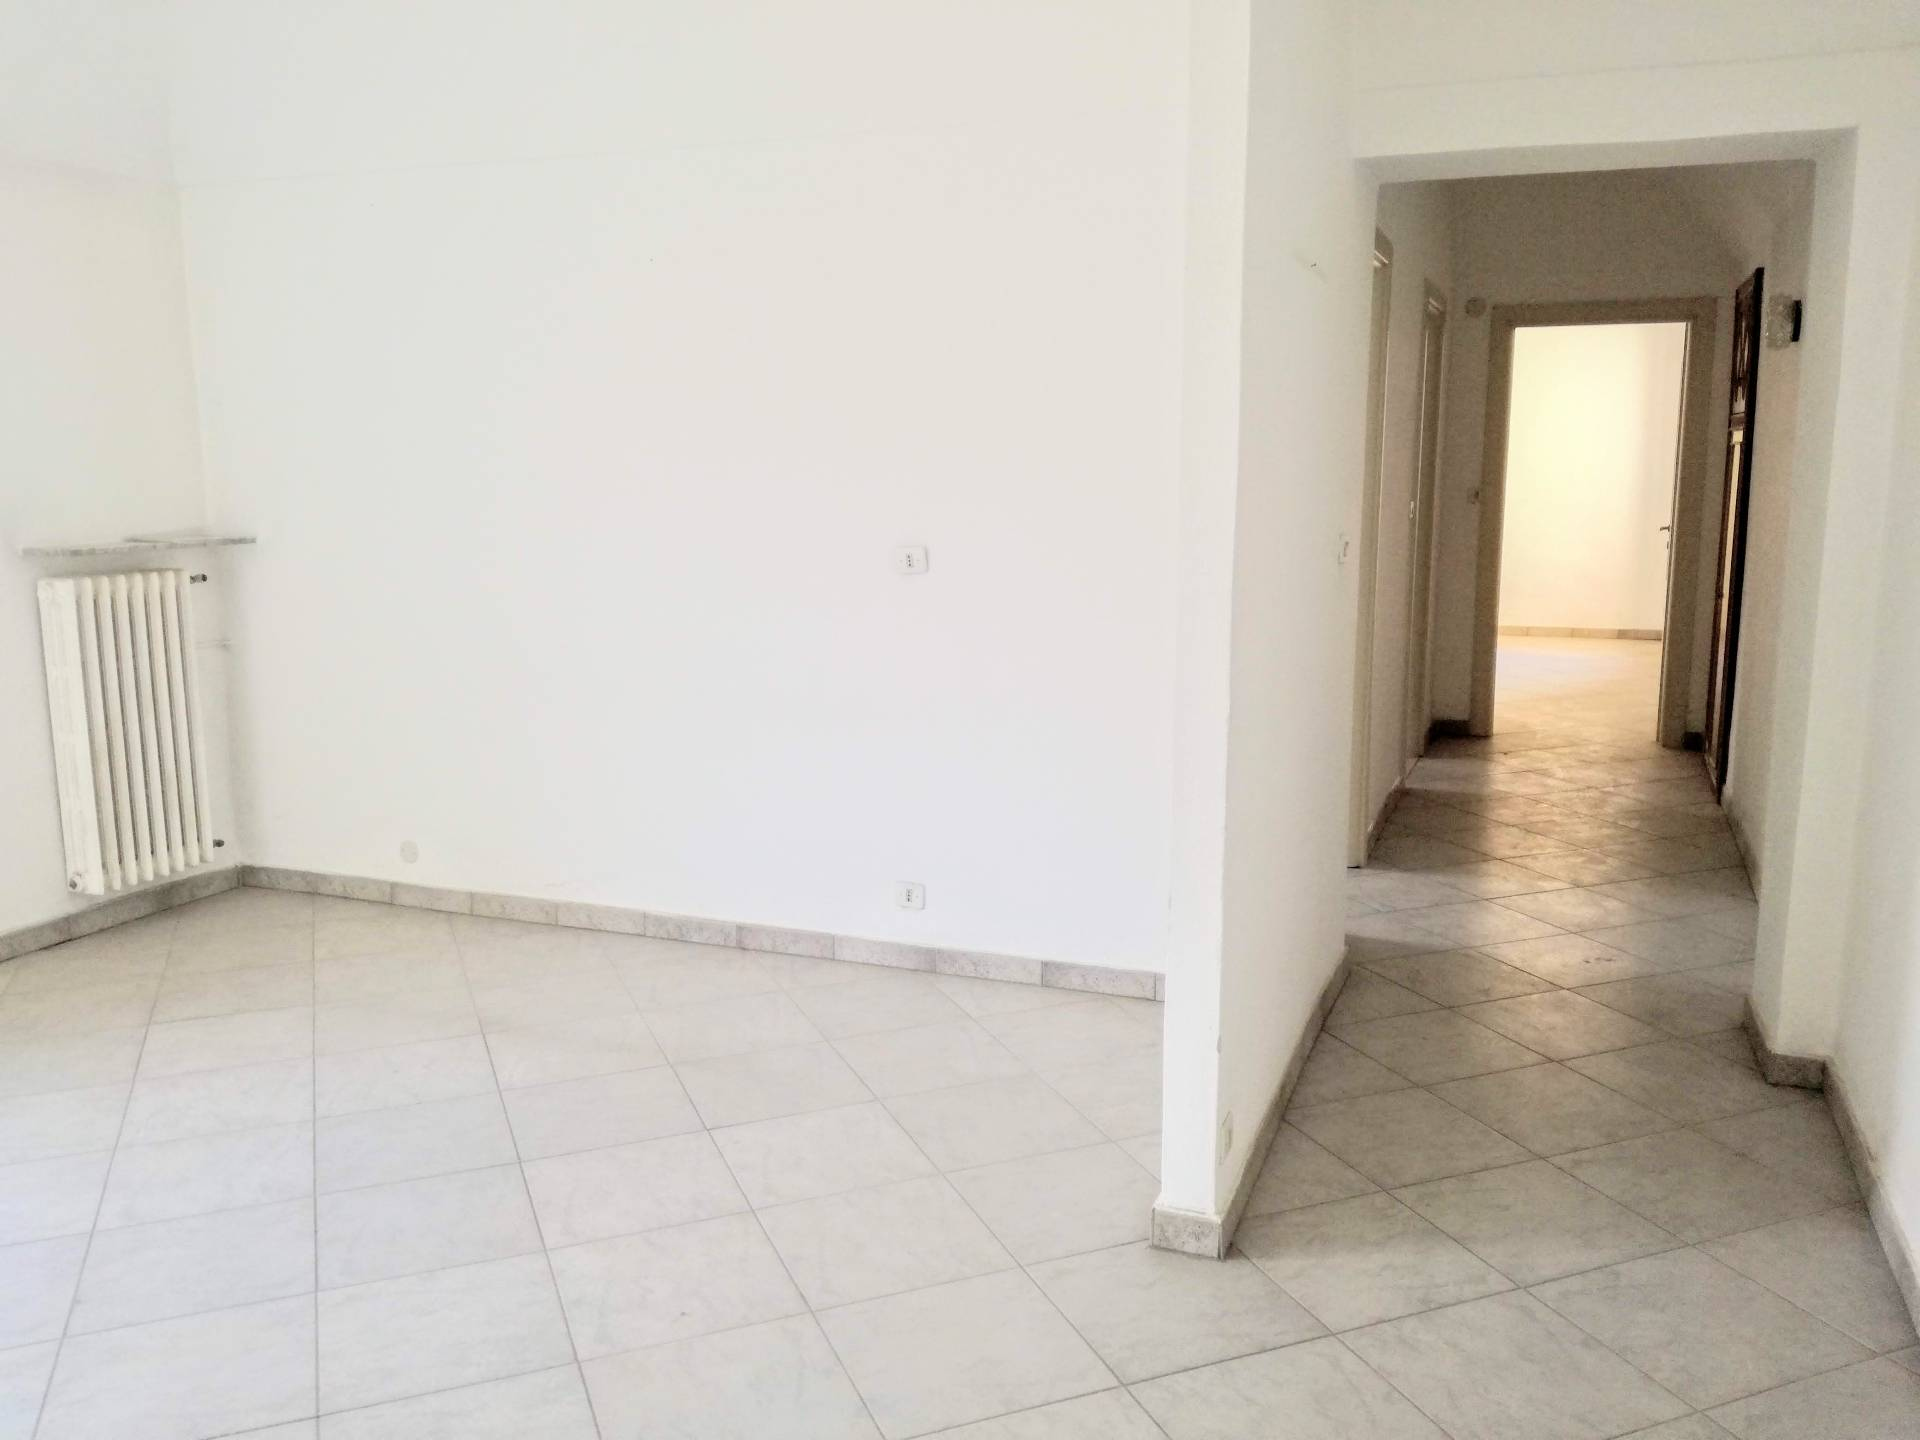 Appartamento in vendita a Casale Monferrato, 3 locali, prezzo € 45.000 | CambioCasa.it